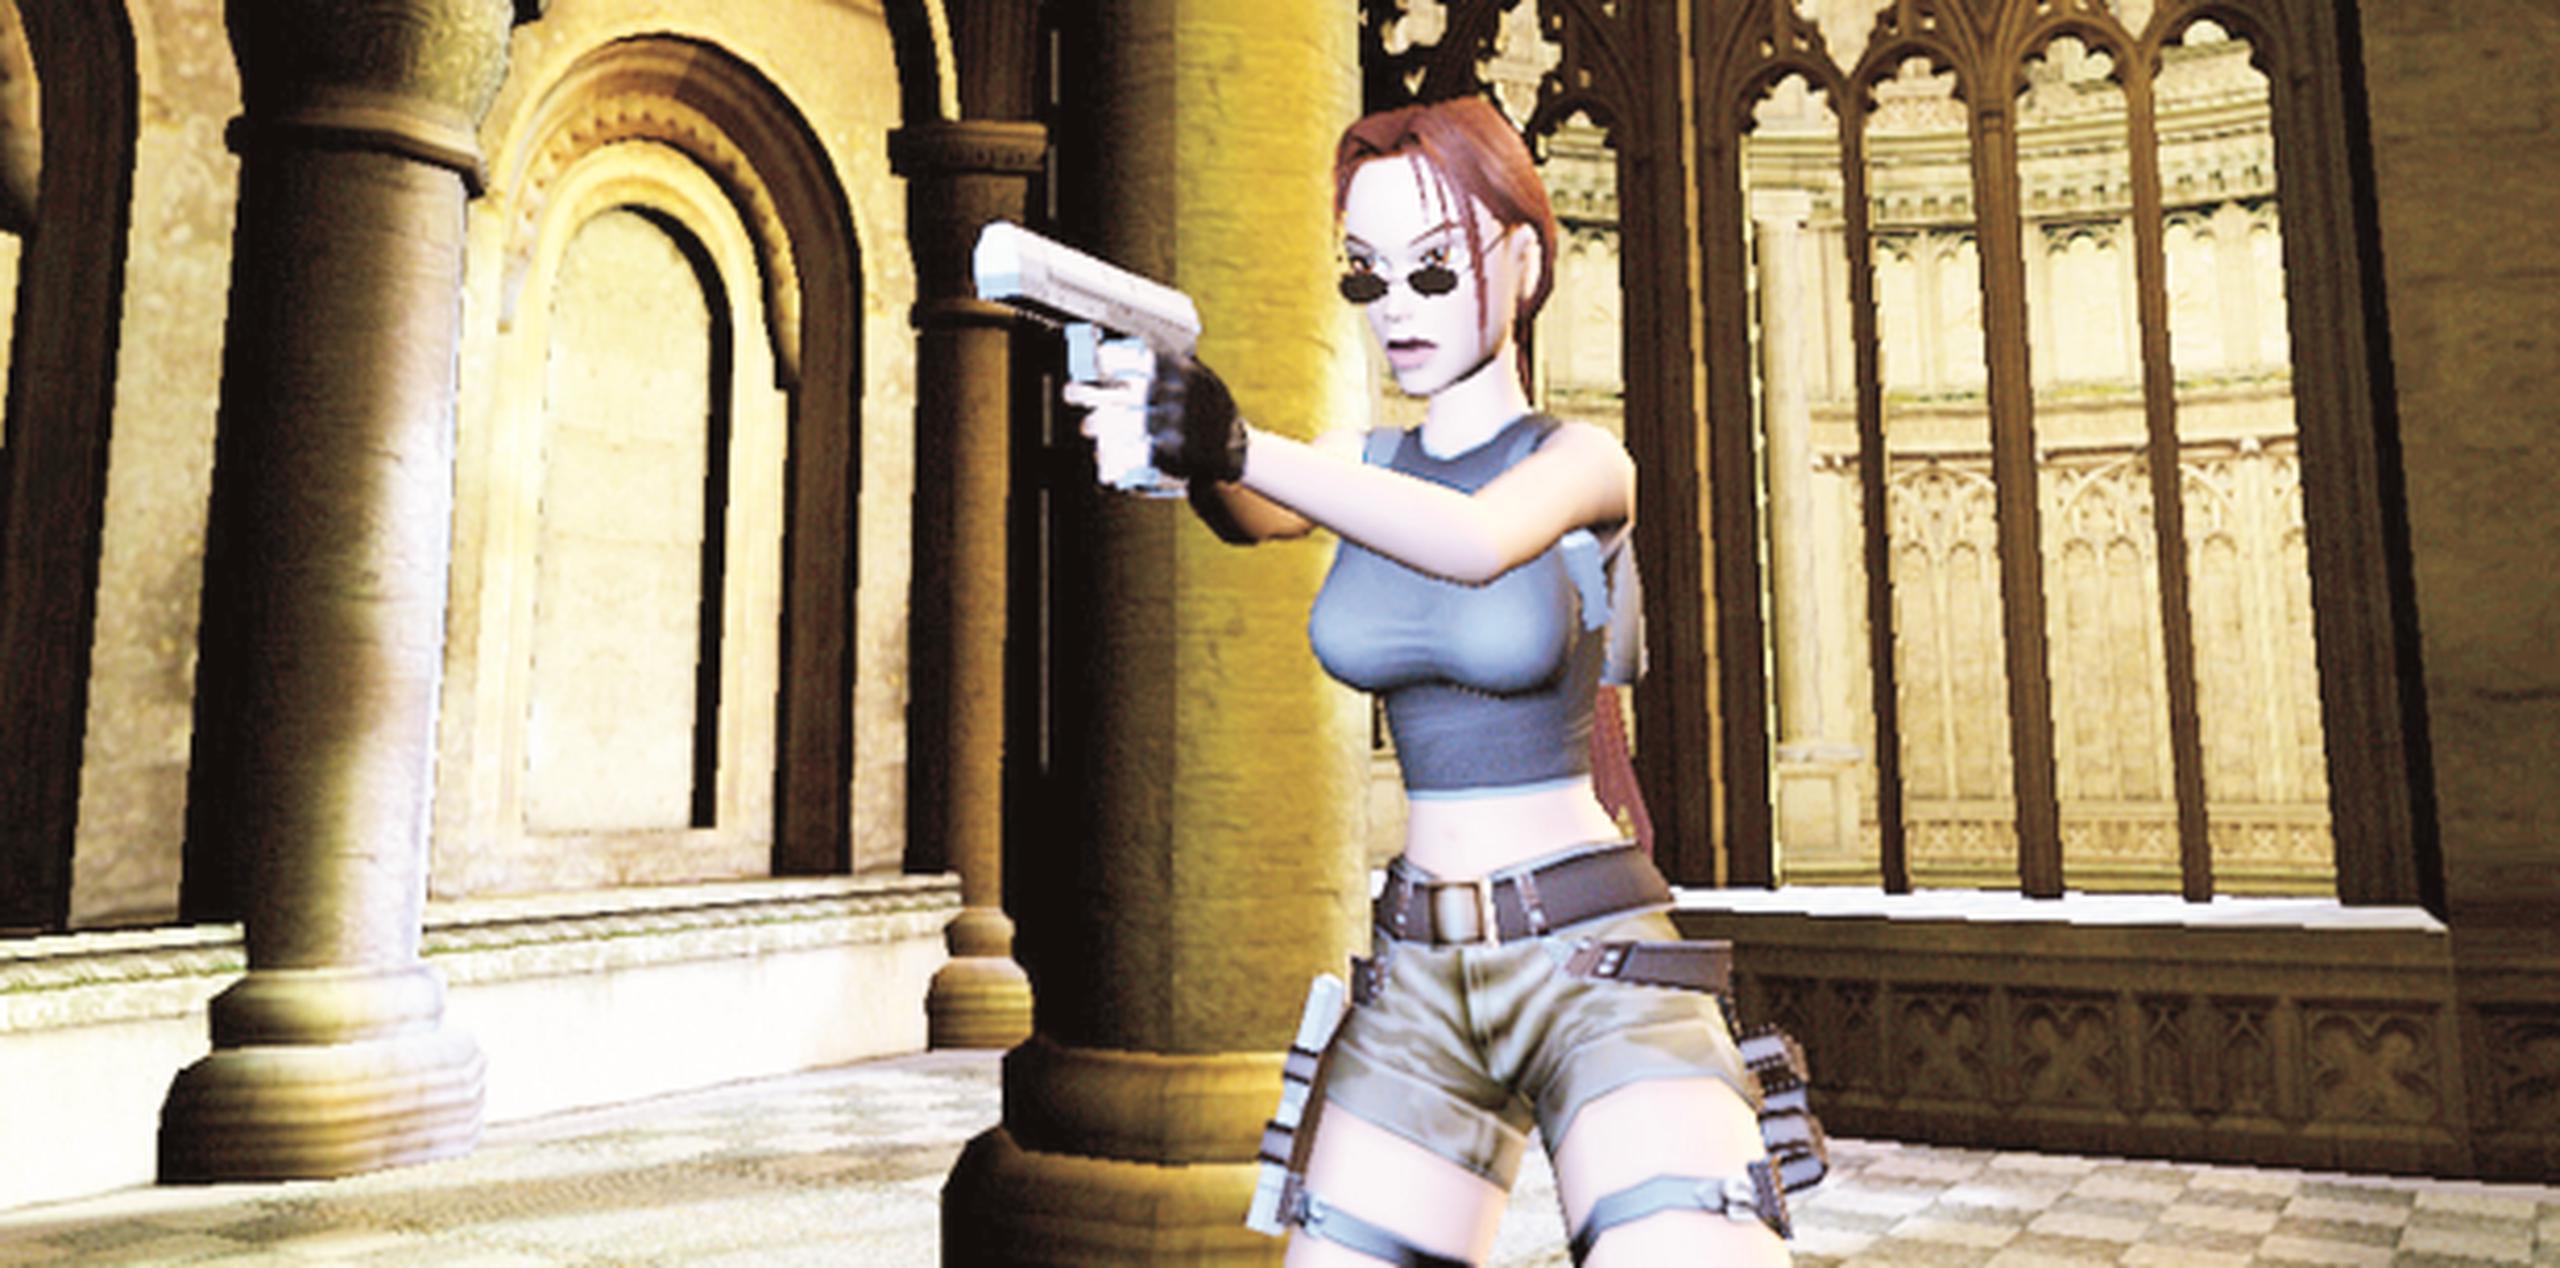 En casi 20 años, Lara Croft, ha logrado decenas de versiones para distintas consolas e incluso ha llegado al cine con éxito. (Archivo)